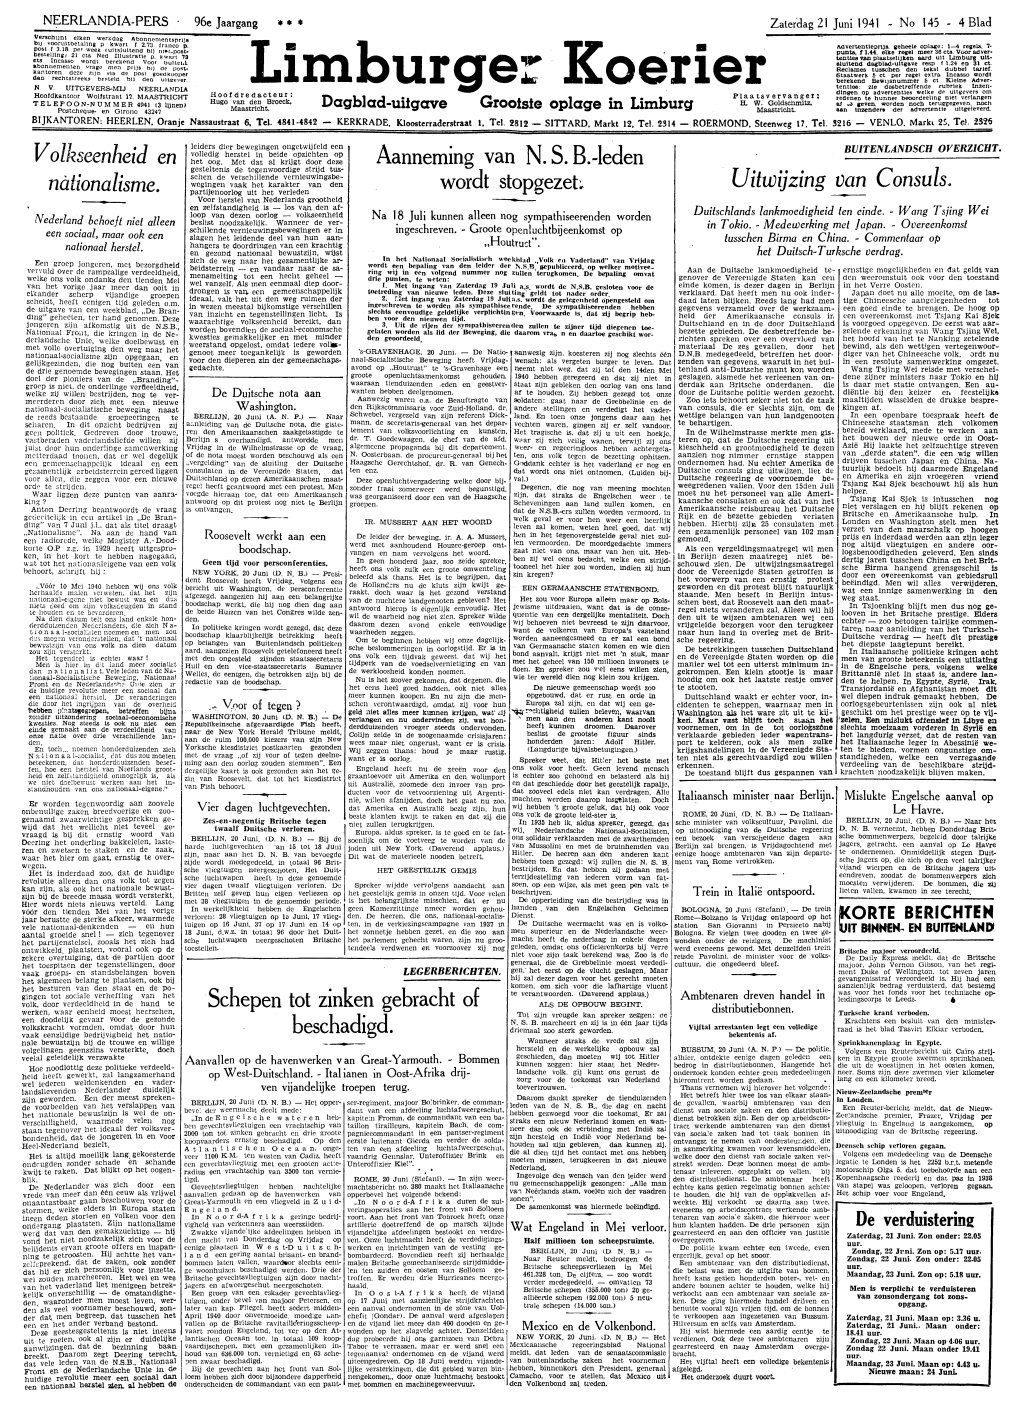 LIMBURGER KOERIER VAN ZATERDAG 21 JUNI 1941 OFFICIEELE MEDEDEELINGEN Vergiftigde Taart Ten Geschenke Uit De Pers